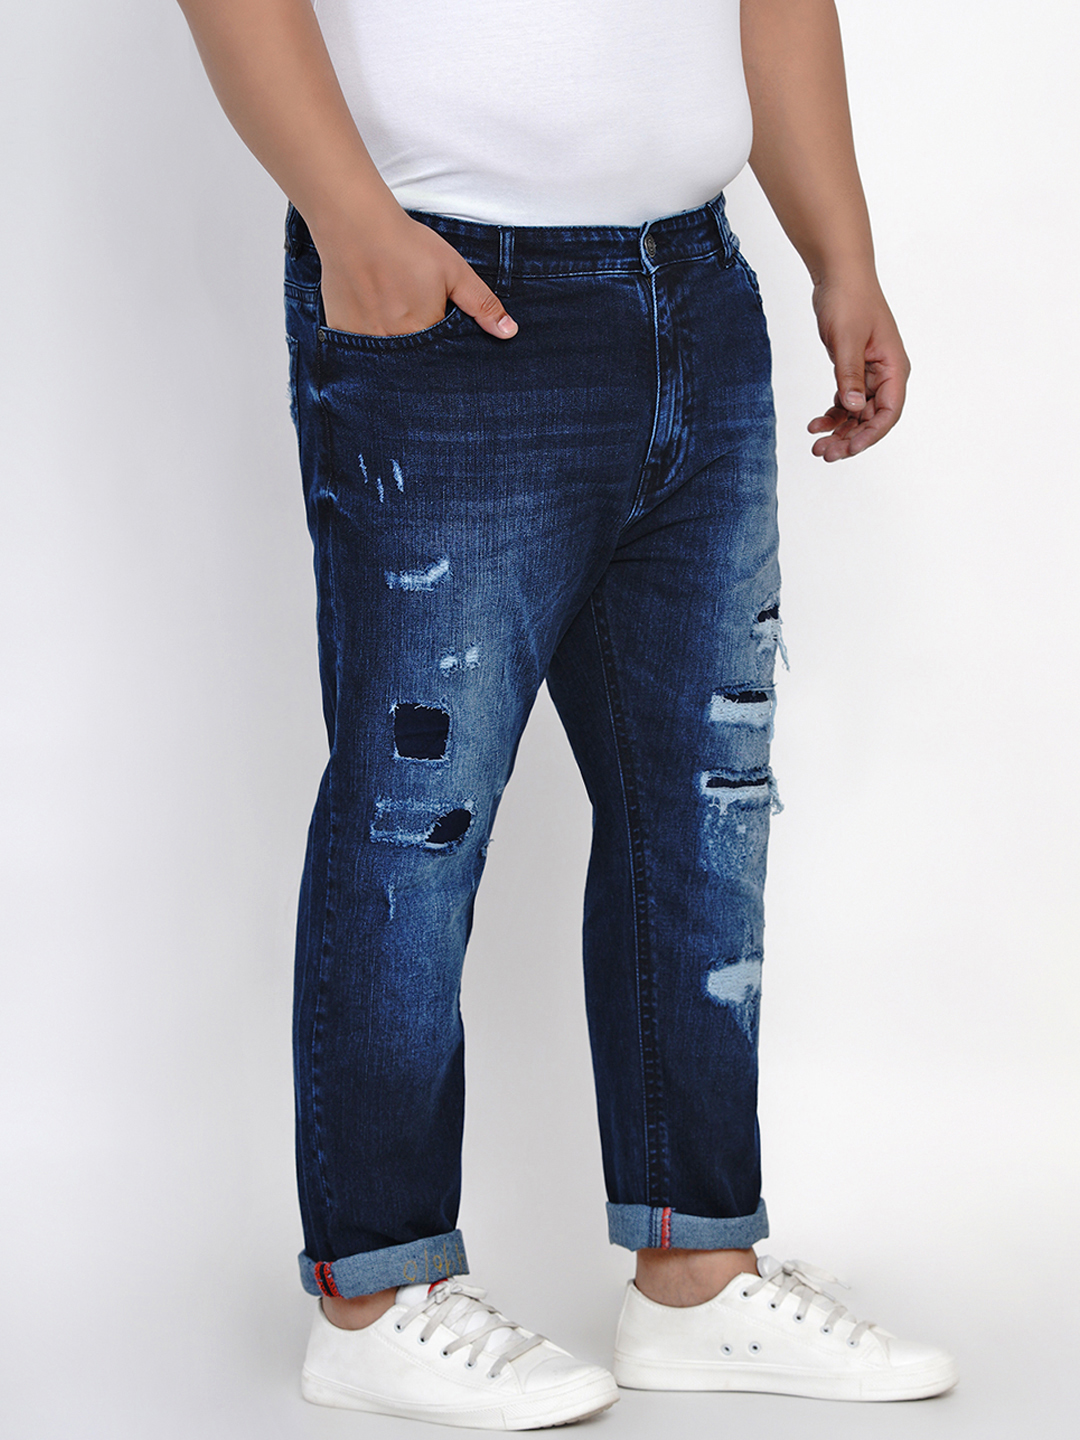 affordables/jeans/JPJ6001/jpj6001-3.jpg